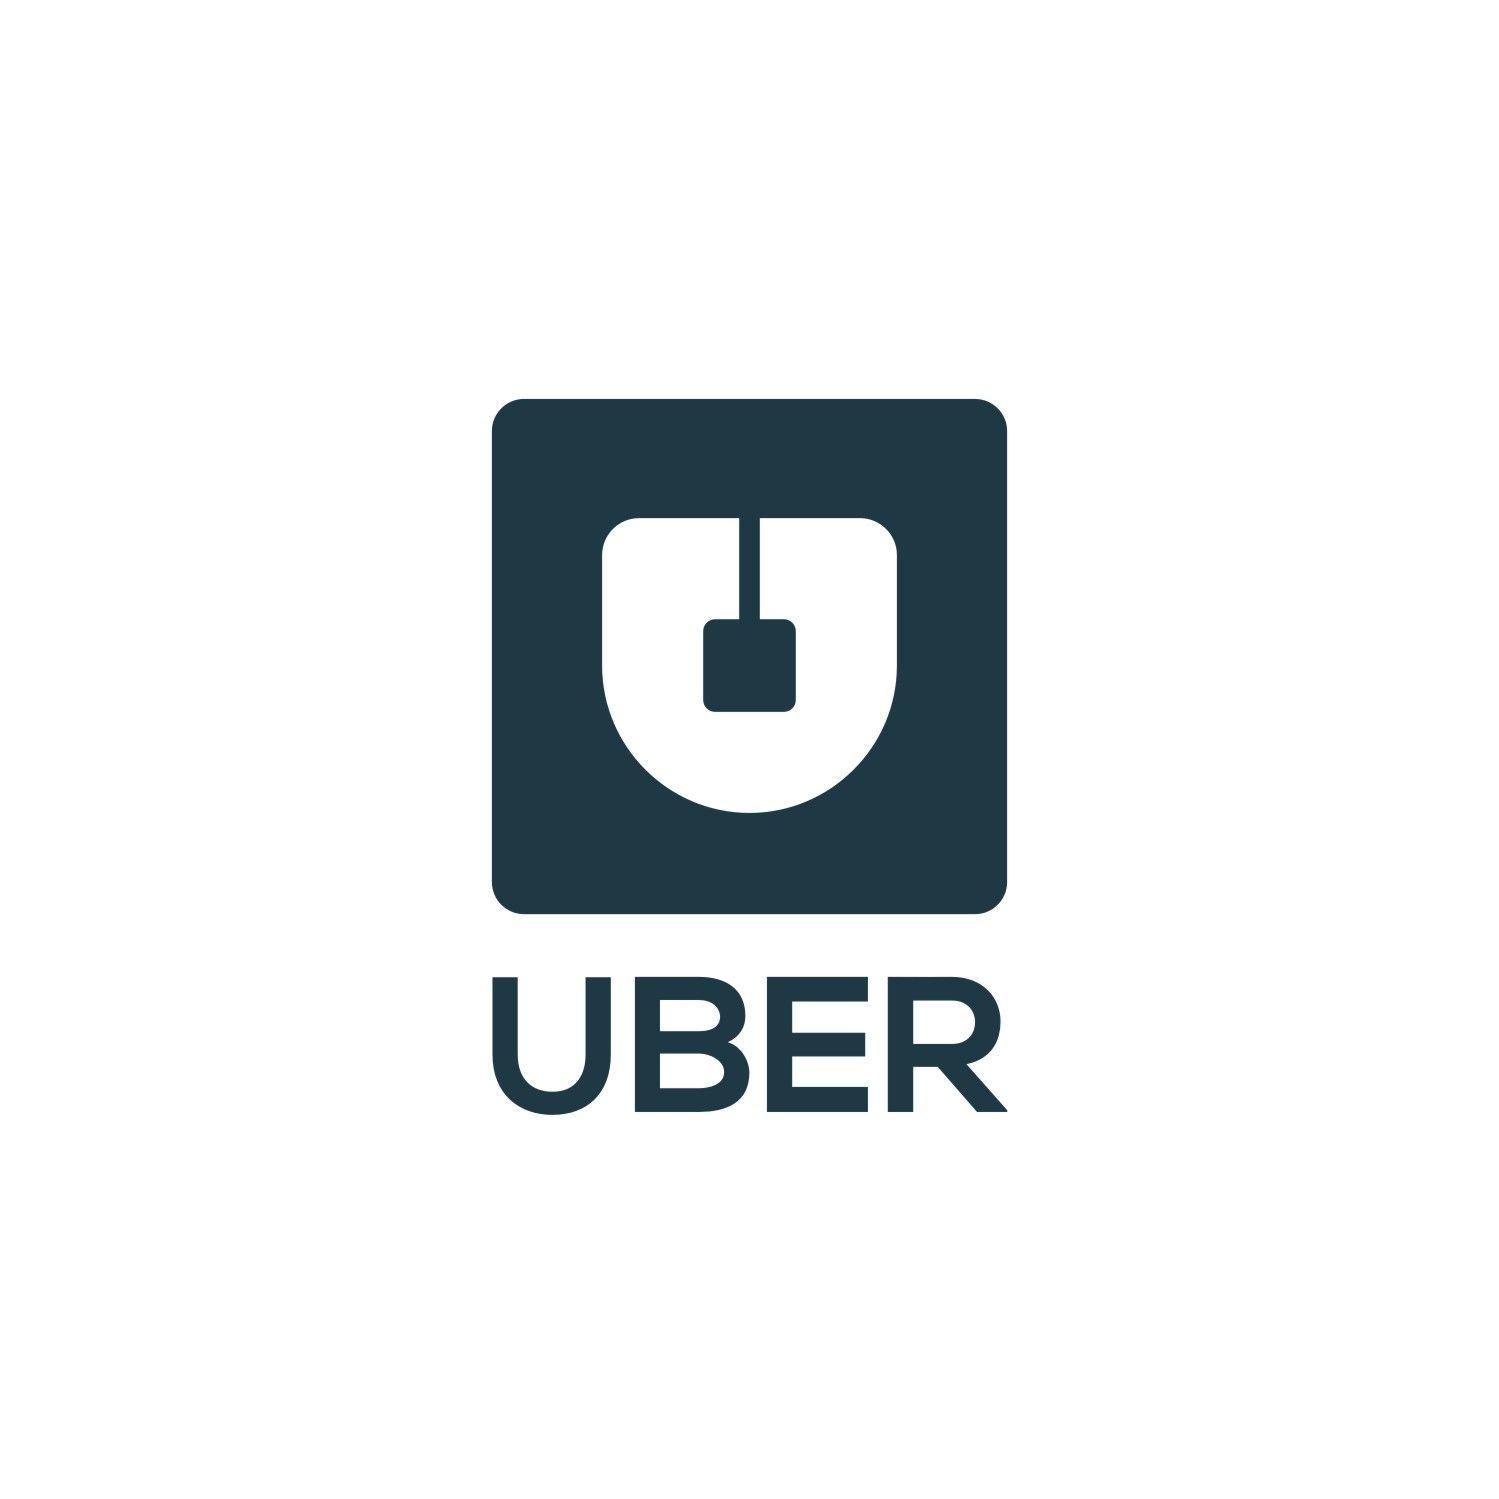 Uber App Logo - Design an unoffical logo for ride share app Uber | $1000 DesignCrowd ...